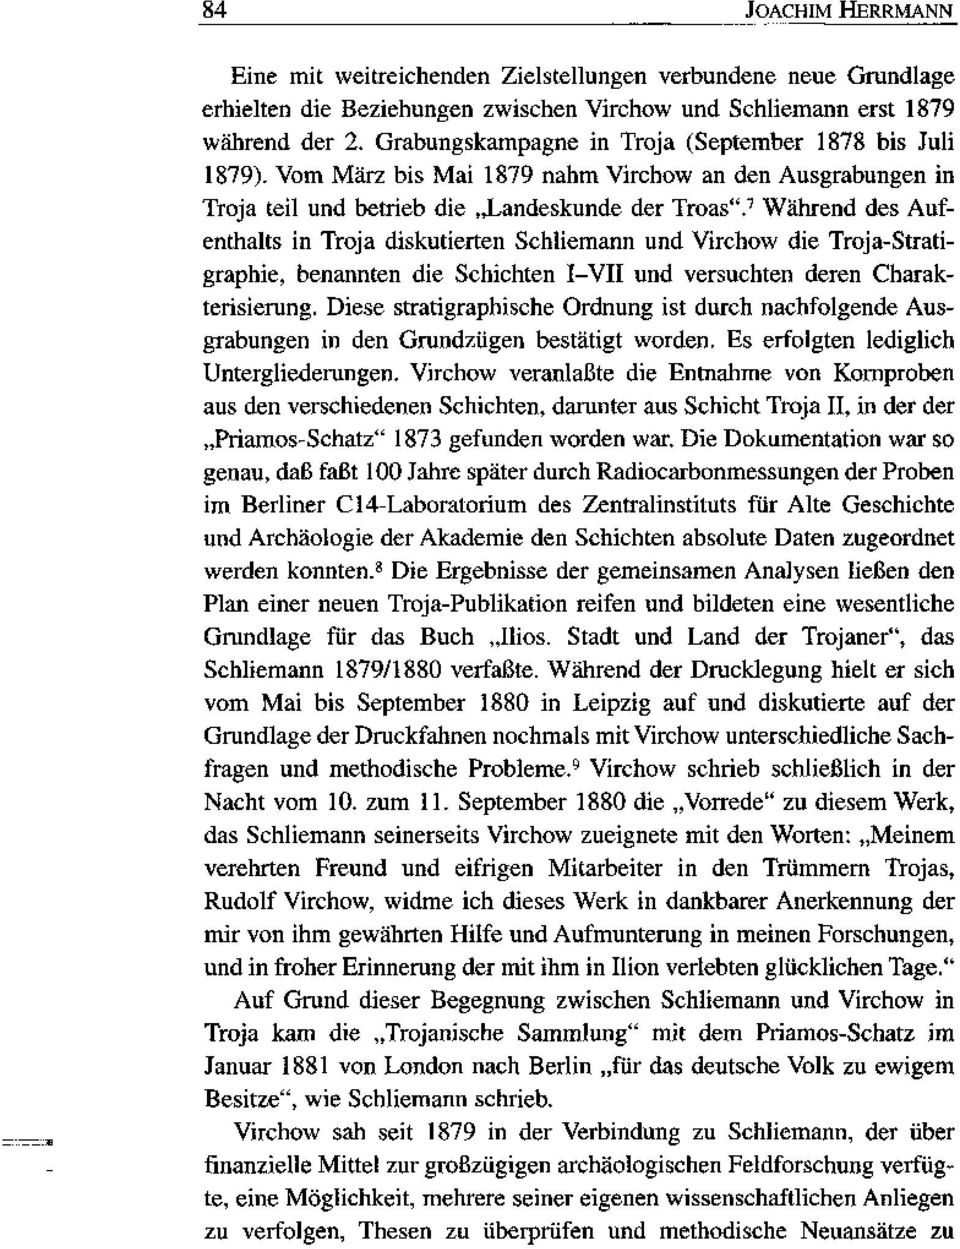 7 Während des Aufenthalts in Troja diskutierten Schliemann und Virchow die Troja-Stratigraphie, benannten die Schichten I-VII und versuchten deren Charakterisierung.